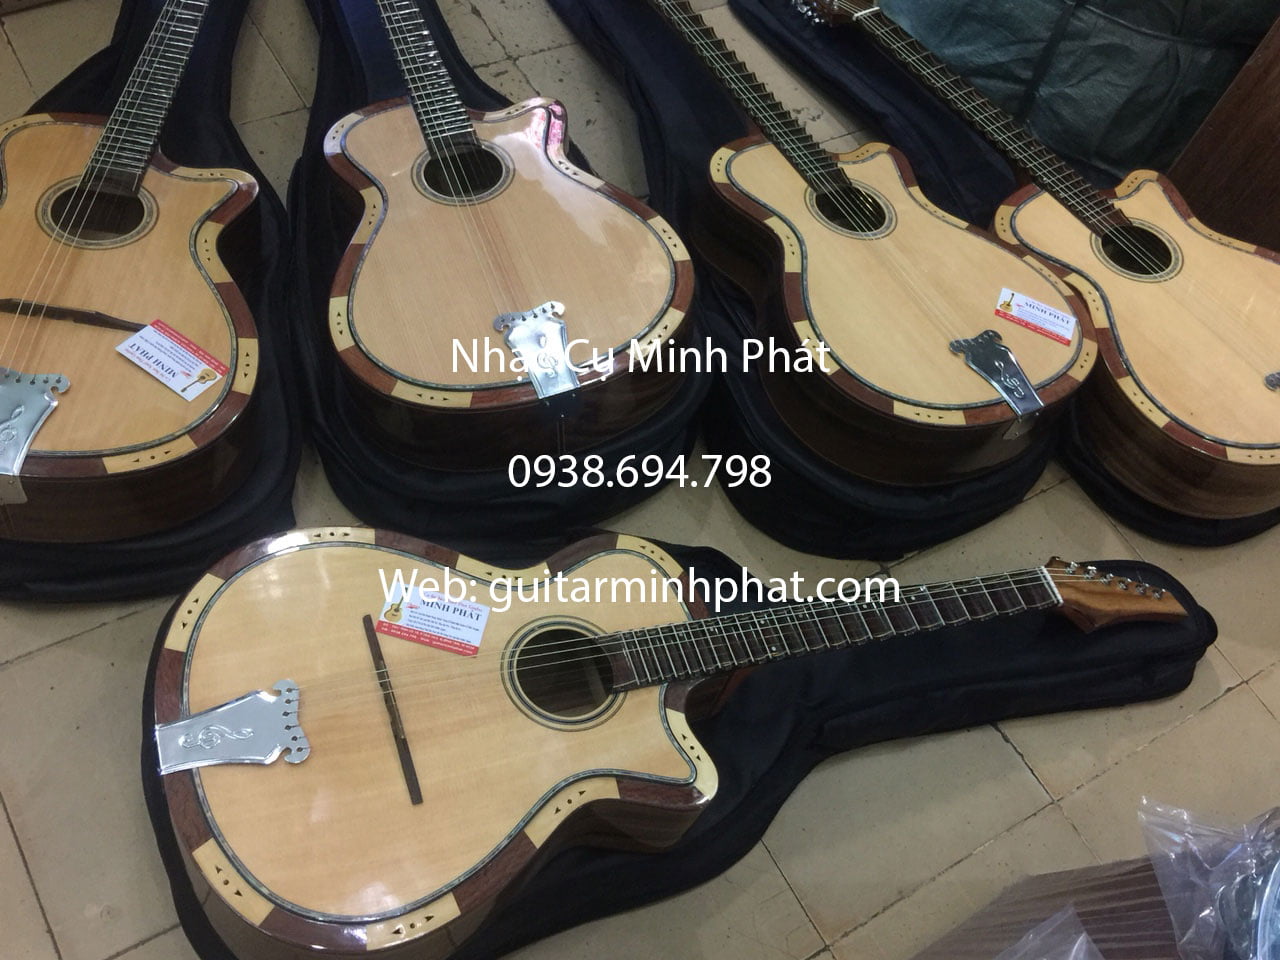 Shop bán đàn guitar cổ thùng hà nội Mua-dan-guitar-vong-co-phim-lom-gia-re-4